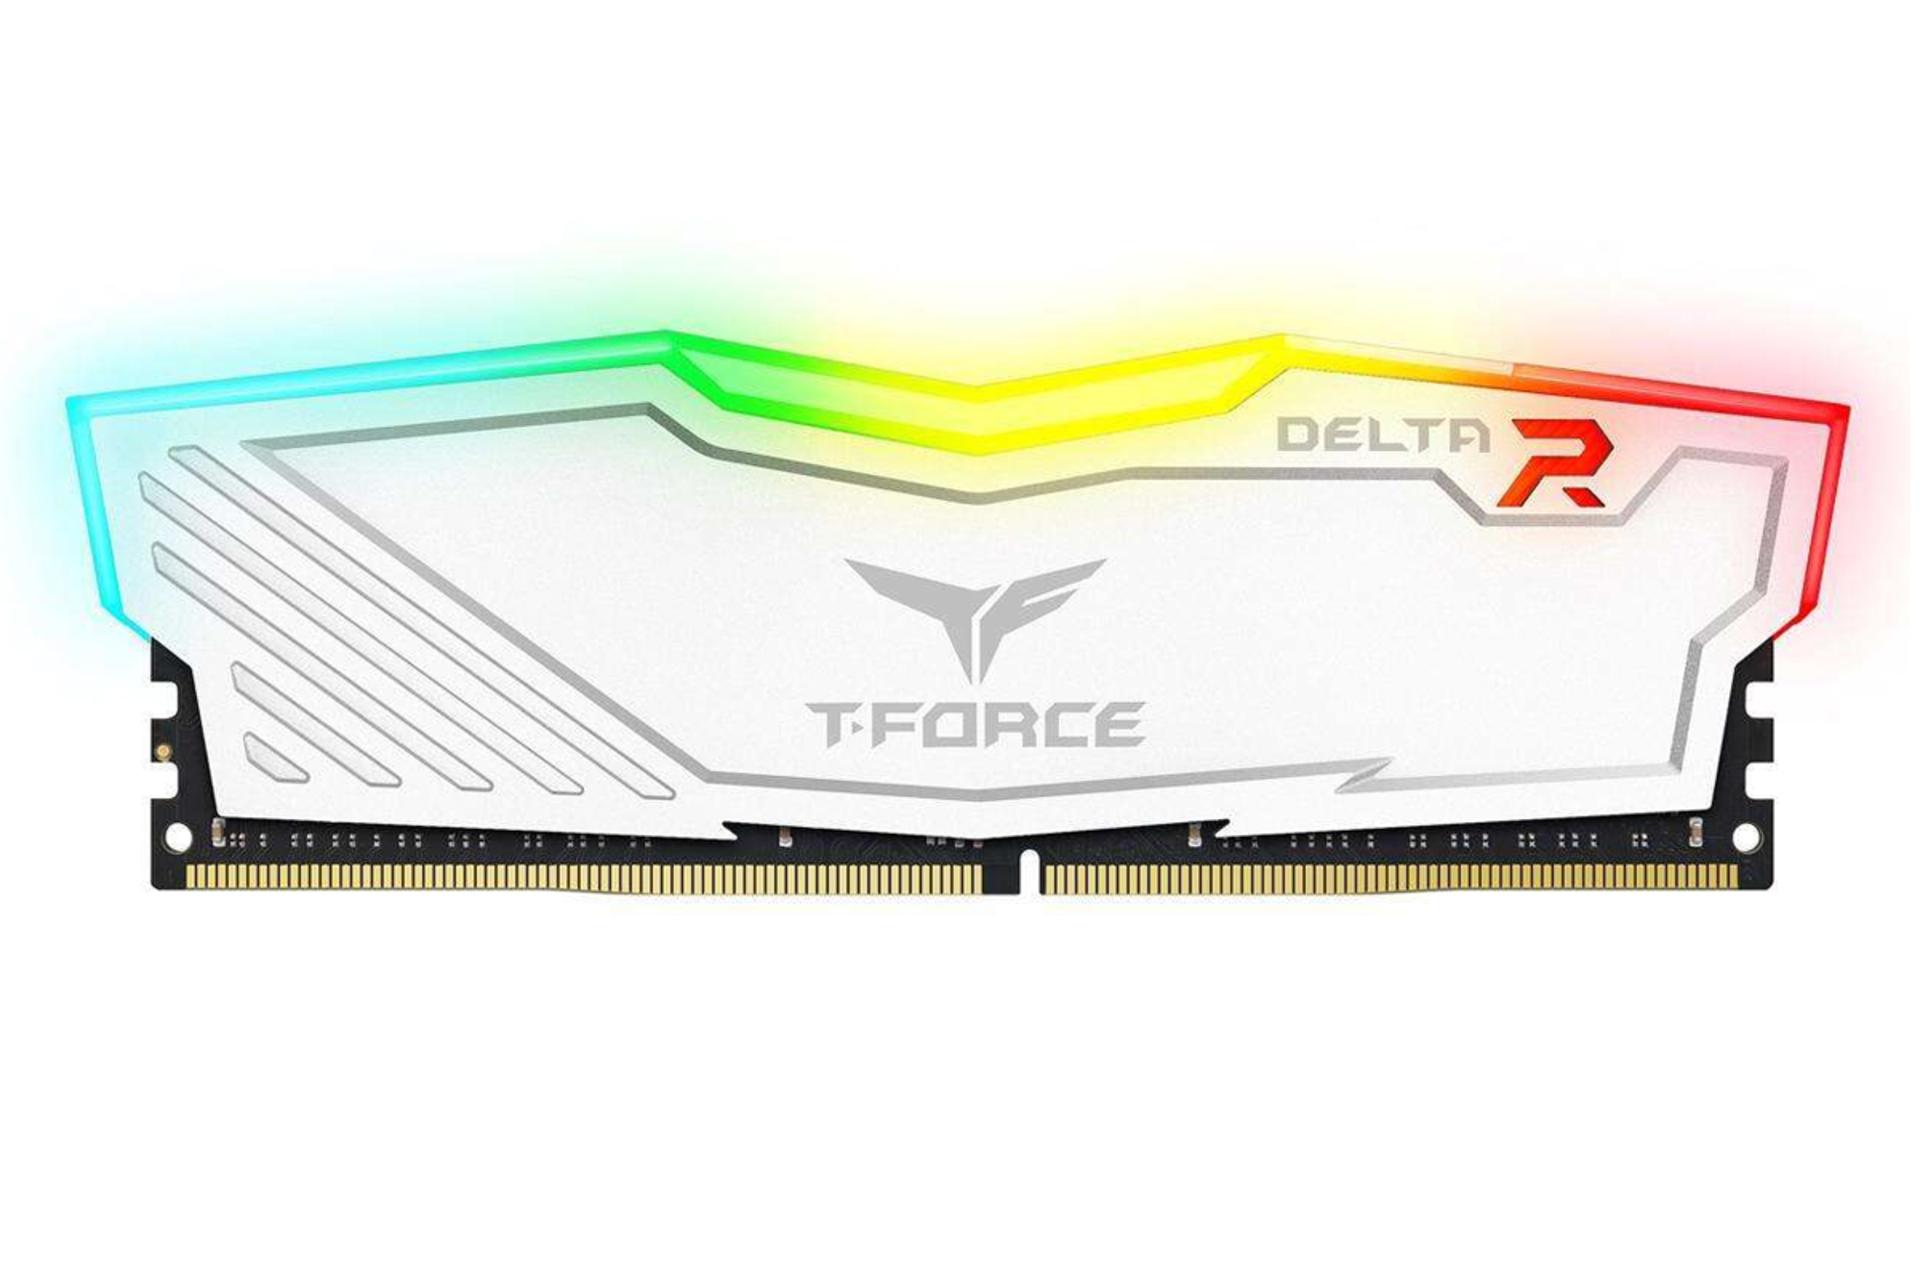 رم تیم گروپ T-FORCE DELTA RGB ظرفیت 16 گیگابایت از نوع DDR4-3200